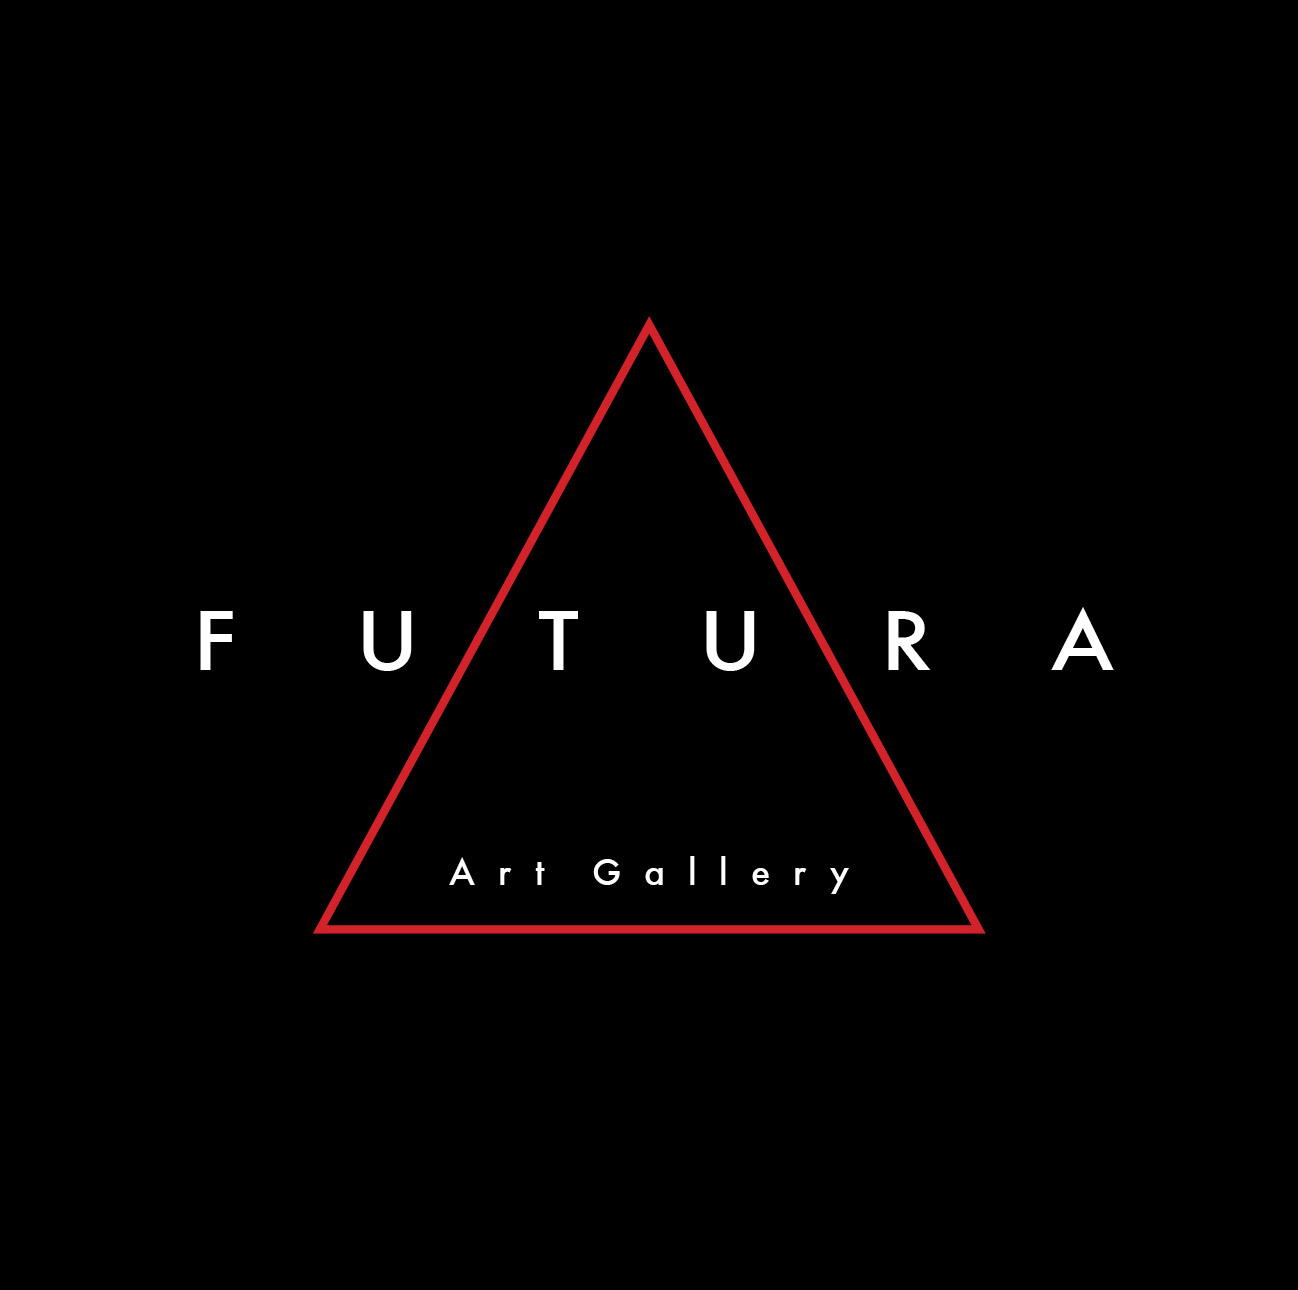 Futura art gallery